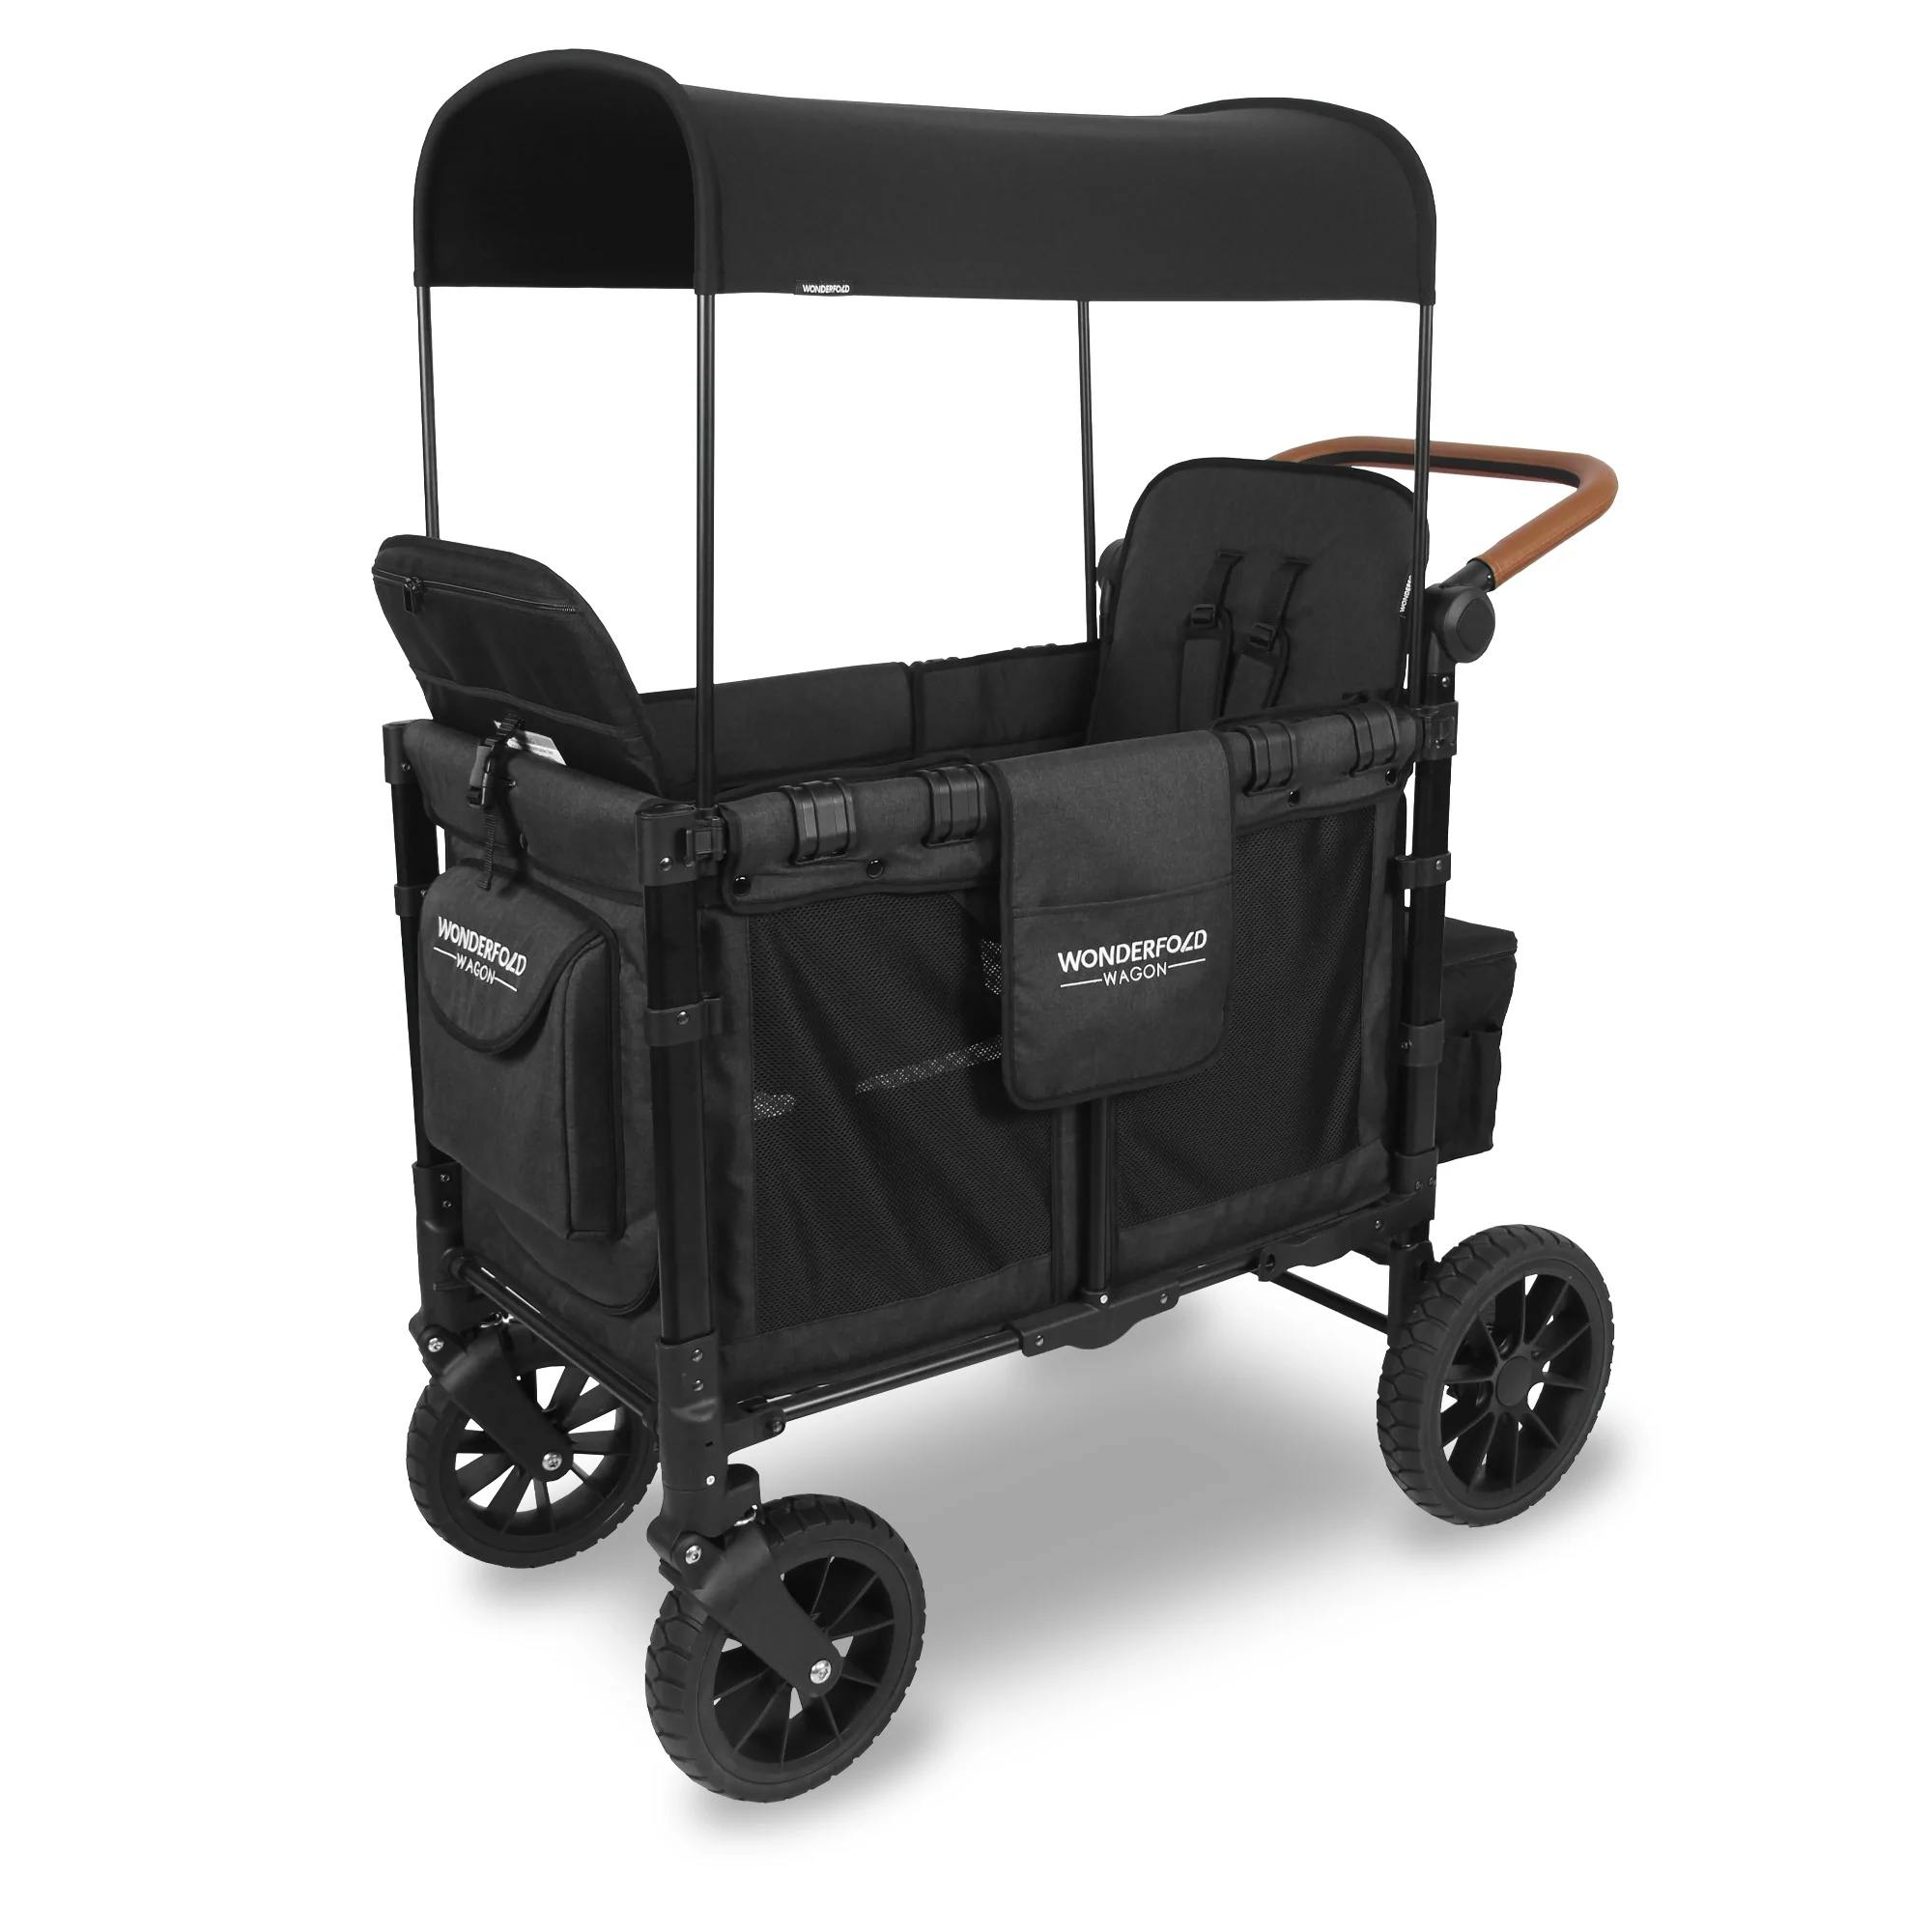 Wonderfold W2 Luxe Stroller Wagon